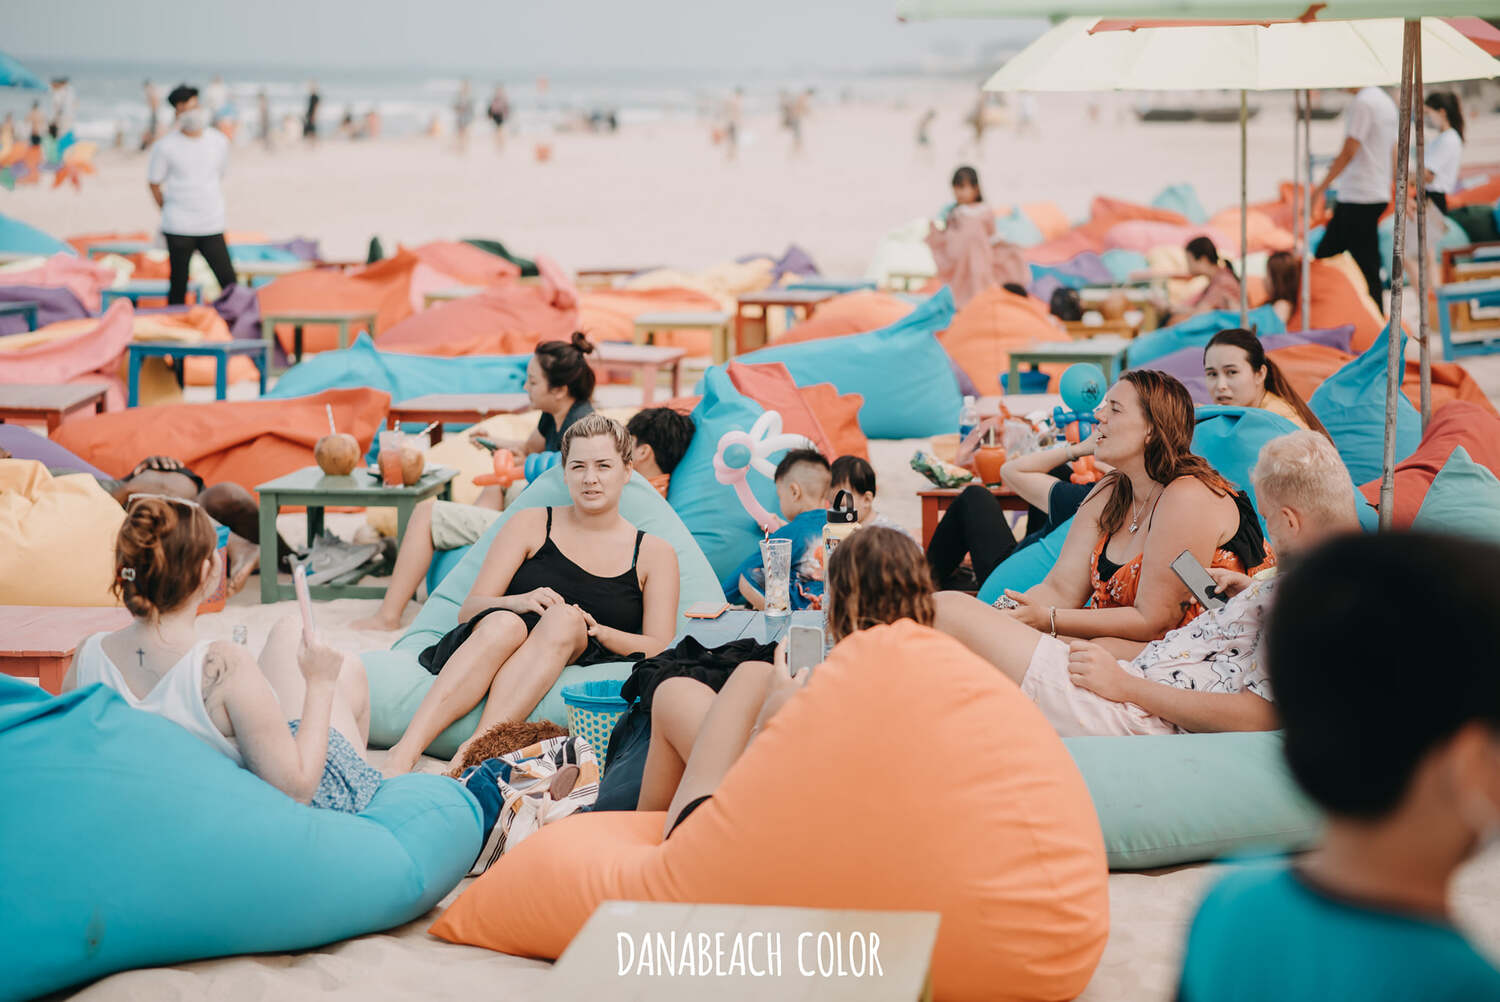 Danabeach Color - Quán cà phê bãi biển độc đáo giữa lòng Đà Nẵng 4